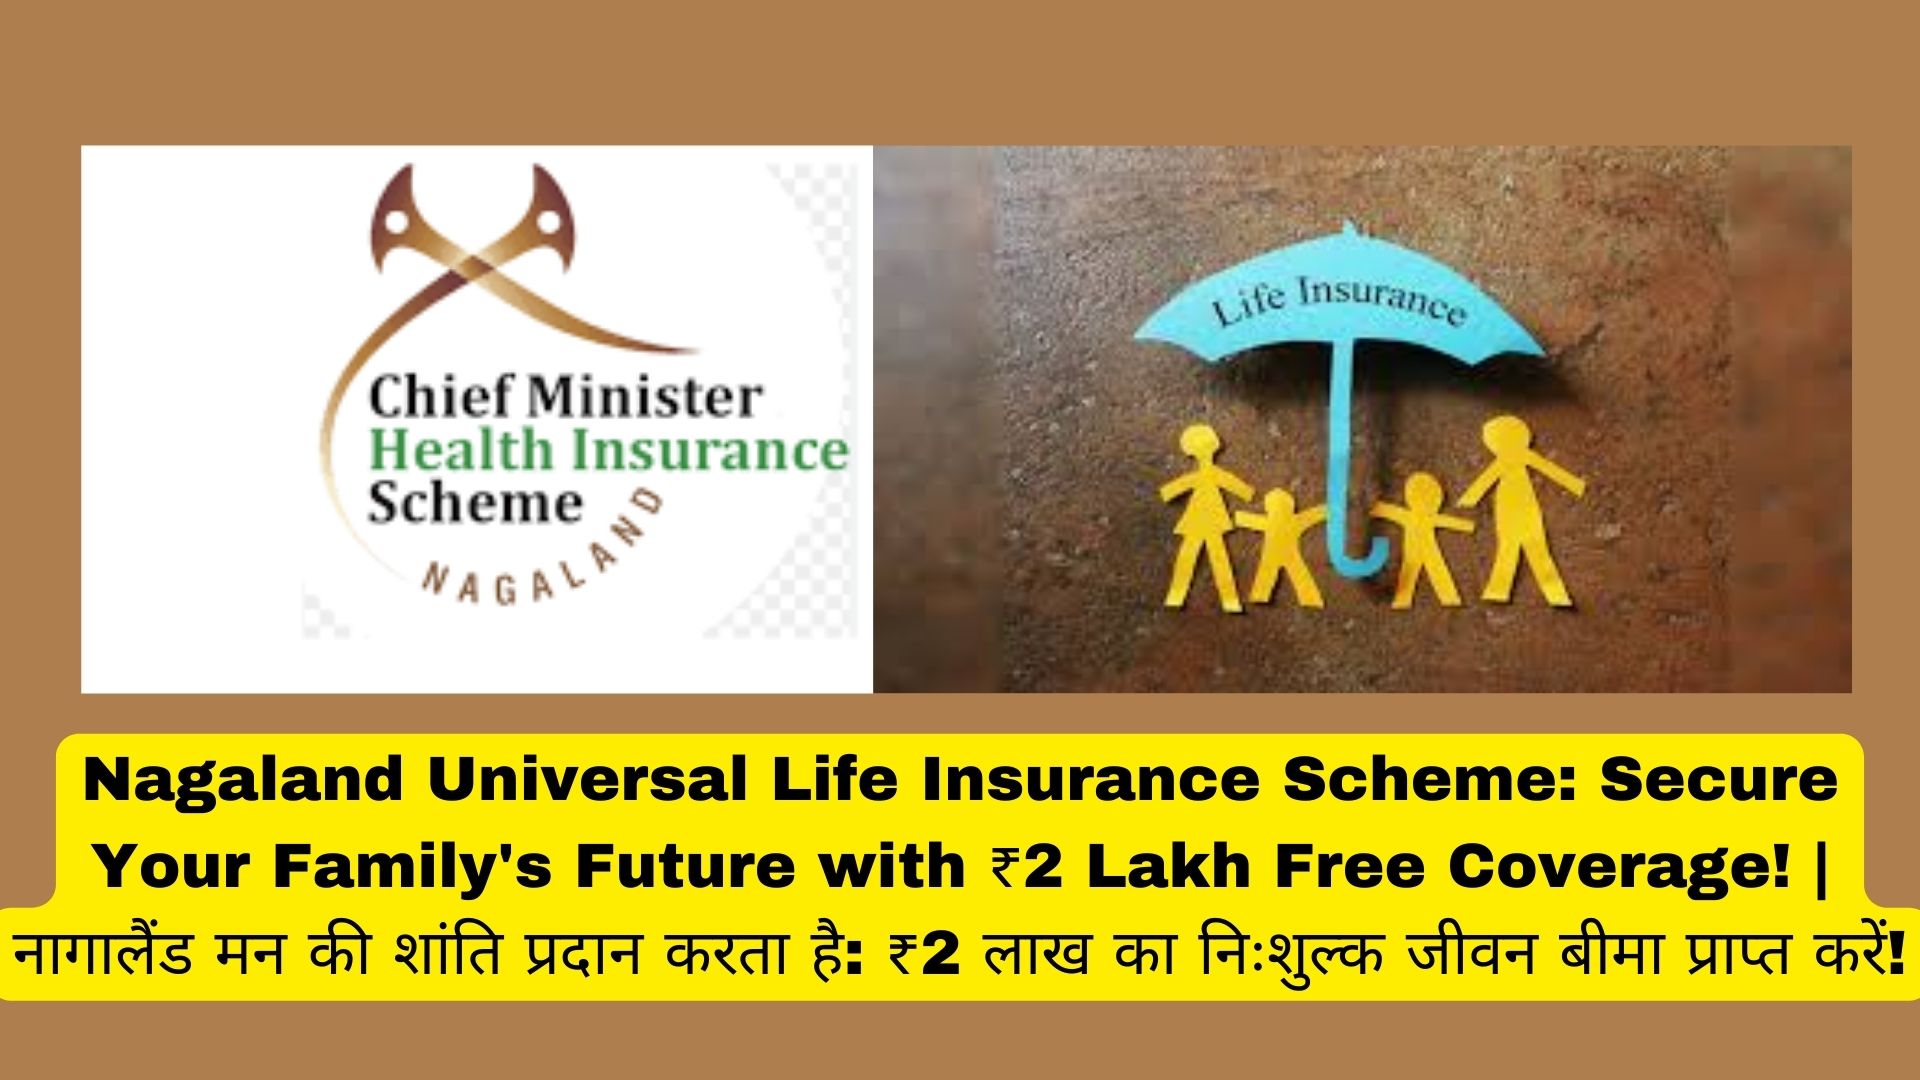 Nagaland Universal Life Insurance Scheme: Secure Your Family's Future with ₹2 Lakh Free Coverage! | नागालैंड मन की शांति प्रदान करता है: ₹2 लाख का निःशुल्क जीवन बीमा प्राप्त करें!